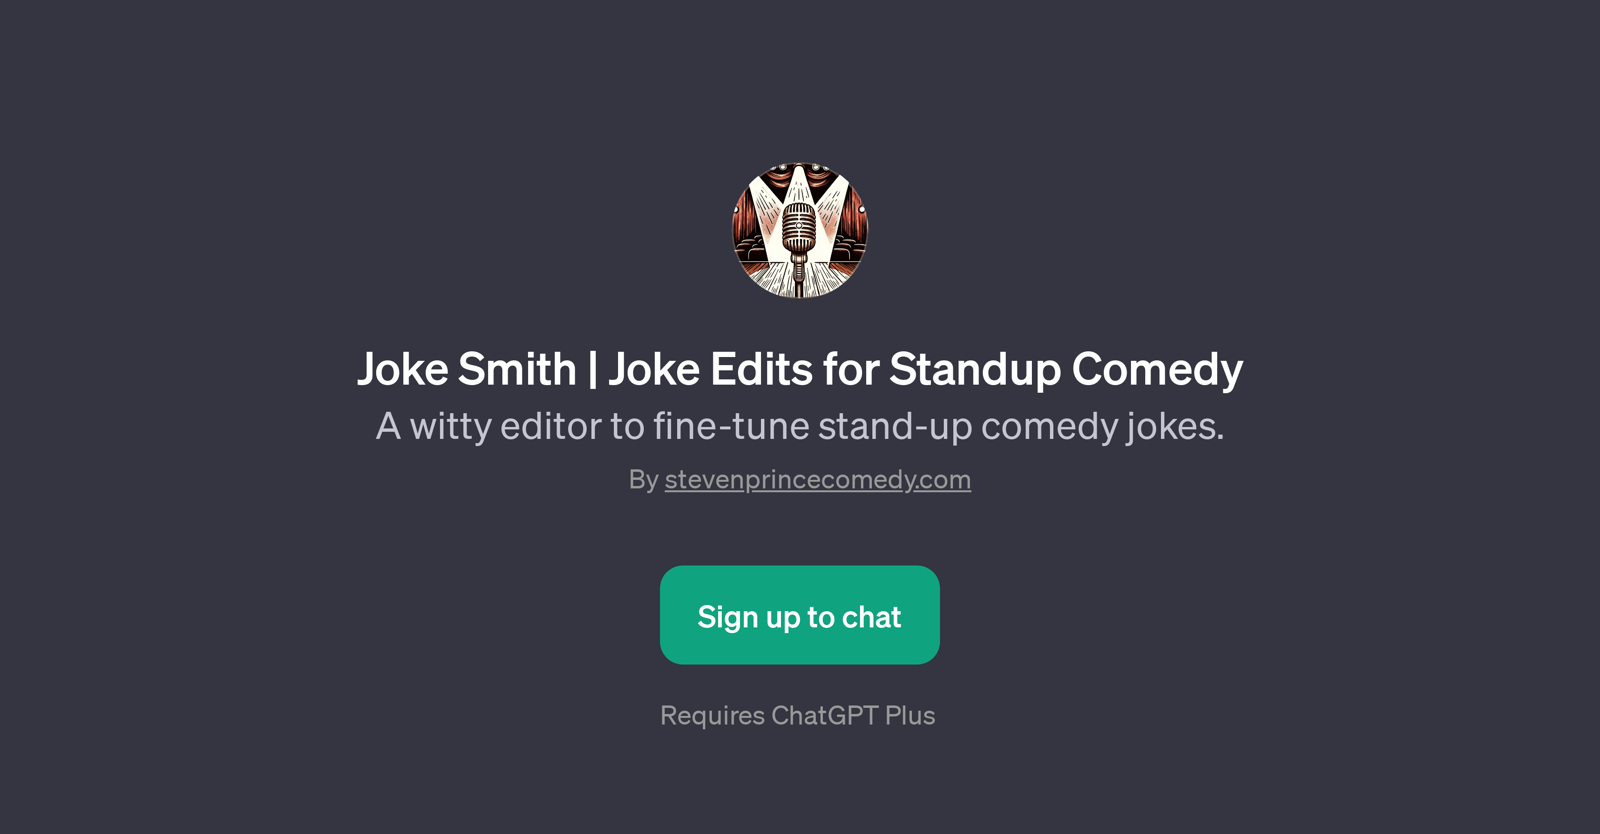 Joke Smith website